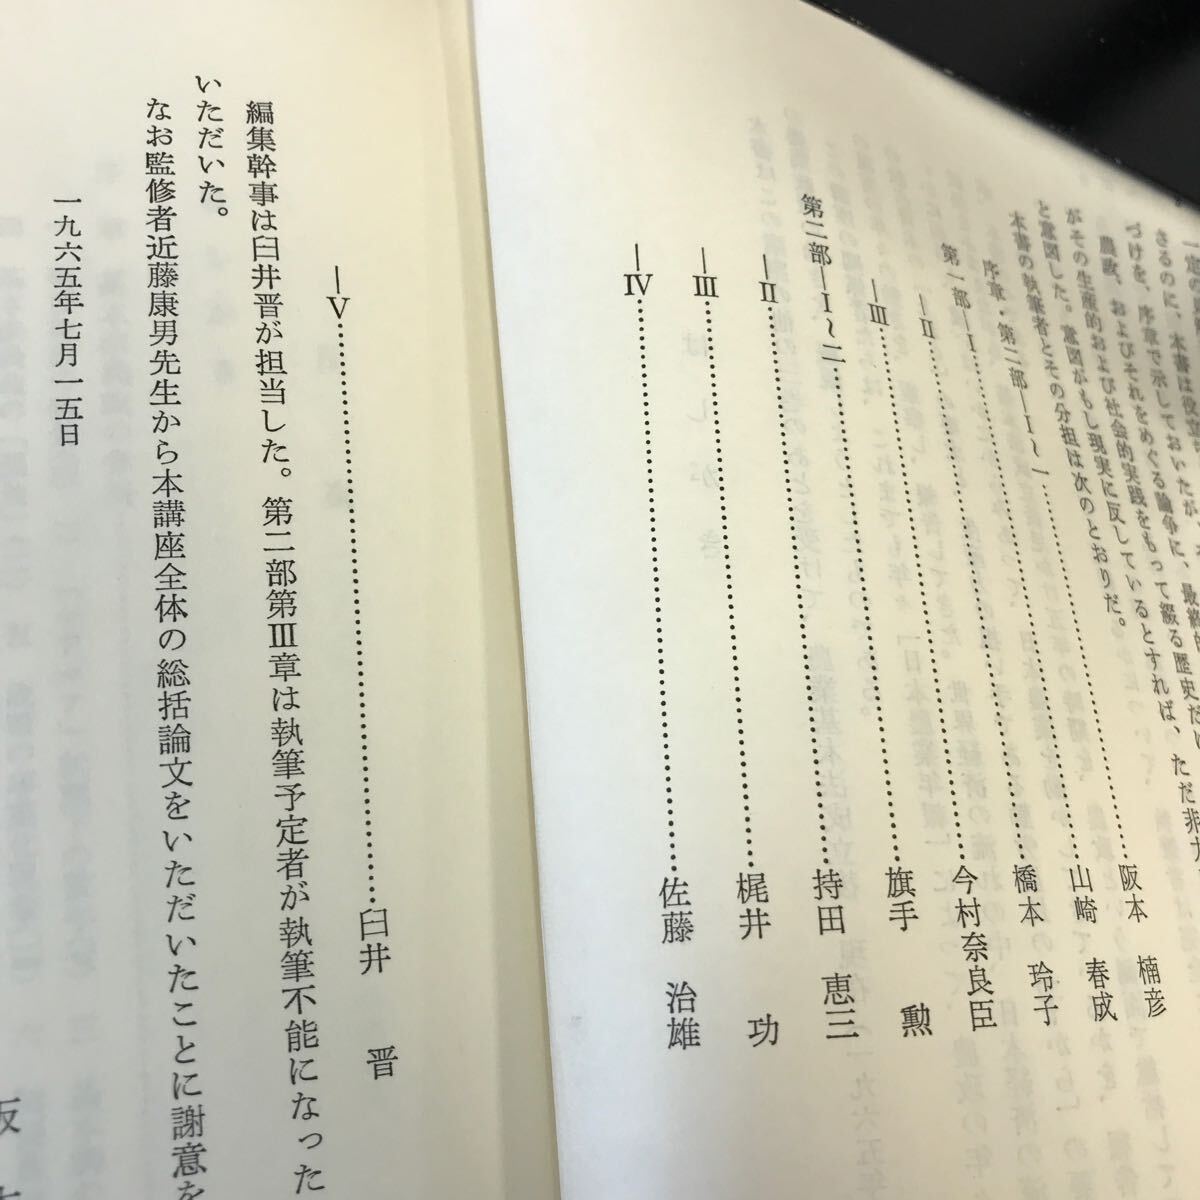 D57-225 основы закон сельское хозяйство .. развитие курс настоящее время японский сельское хозяйство чай. вода книжный магазин вписывание большое количество есть 